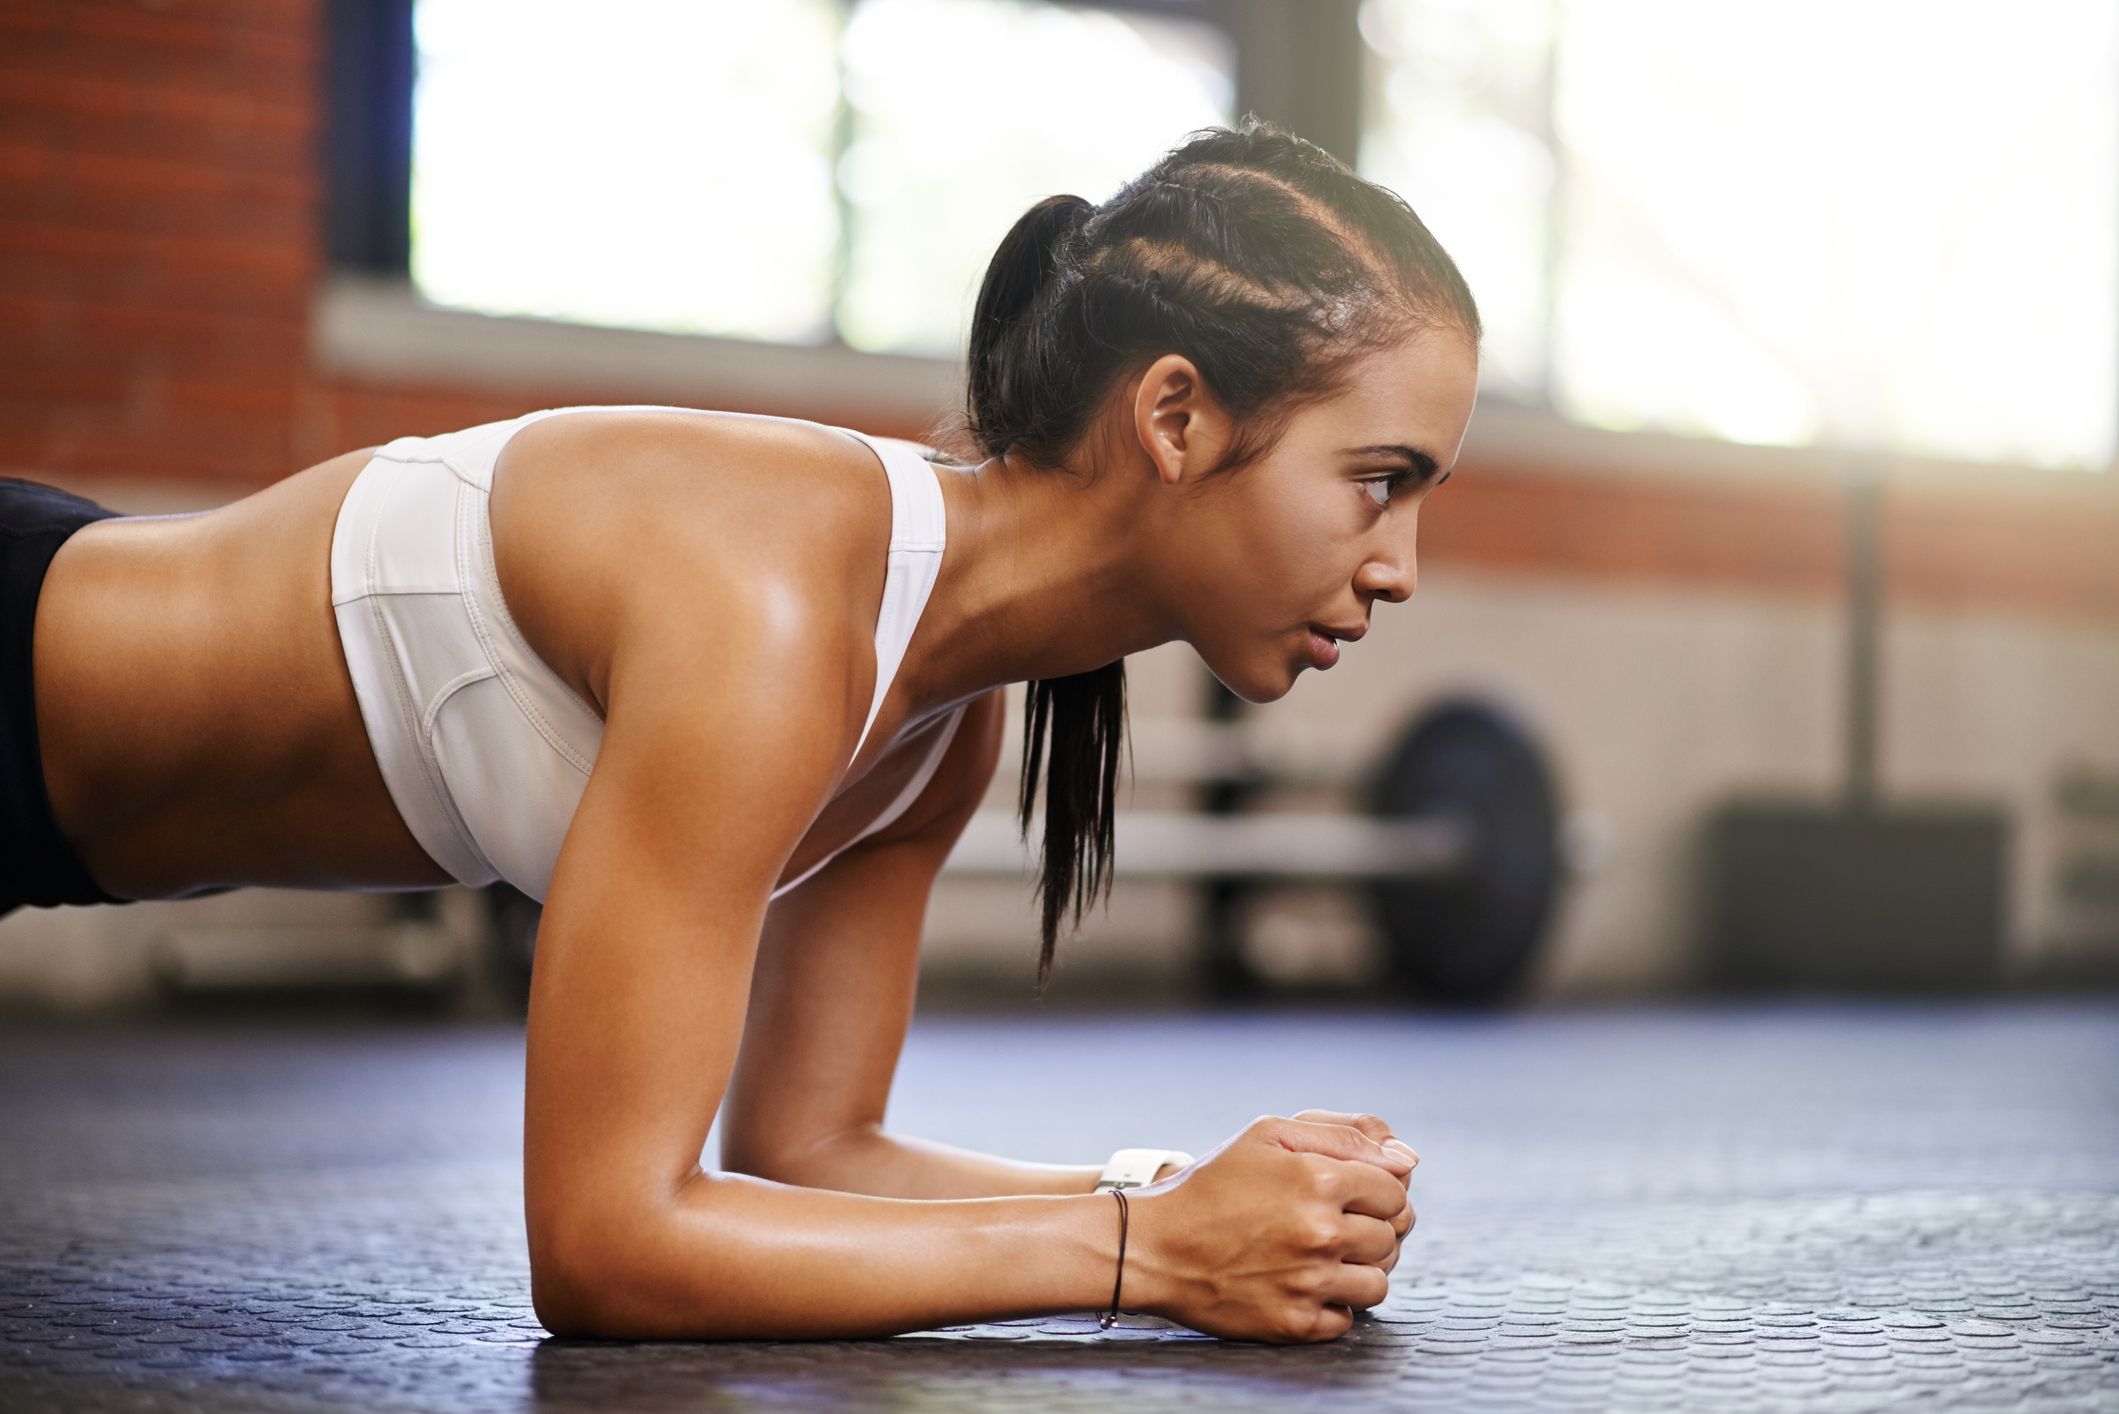 Beginner HIIT Workout For Women